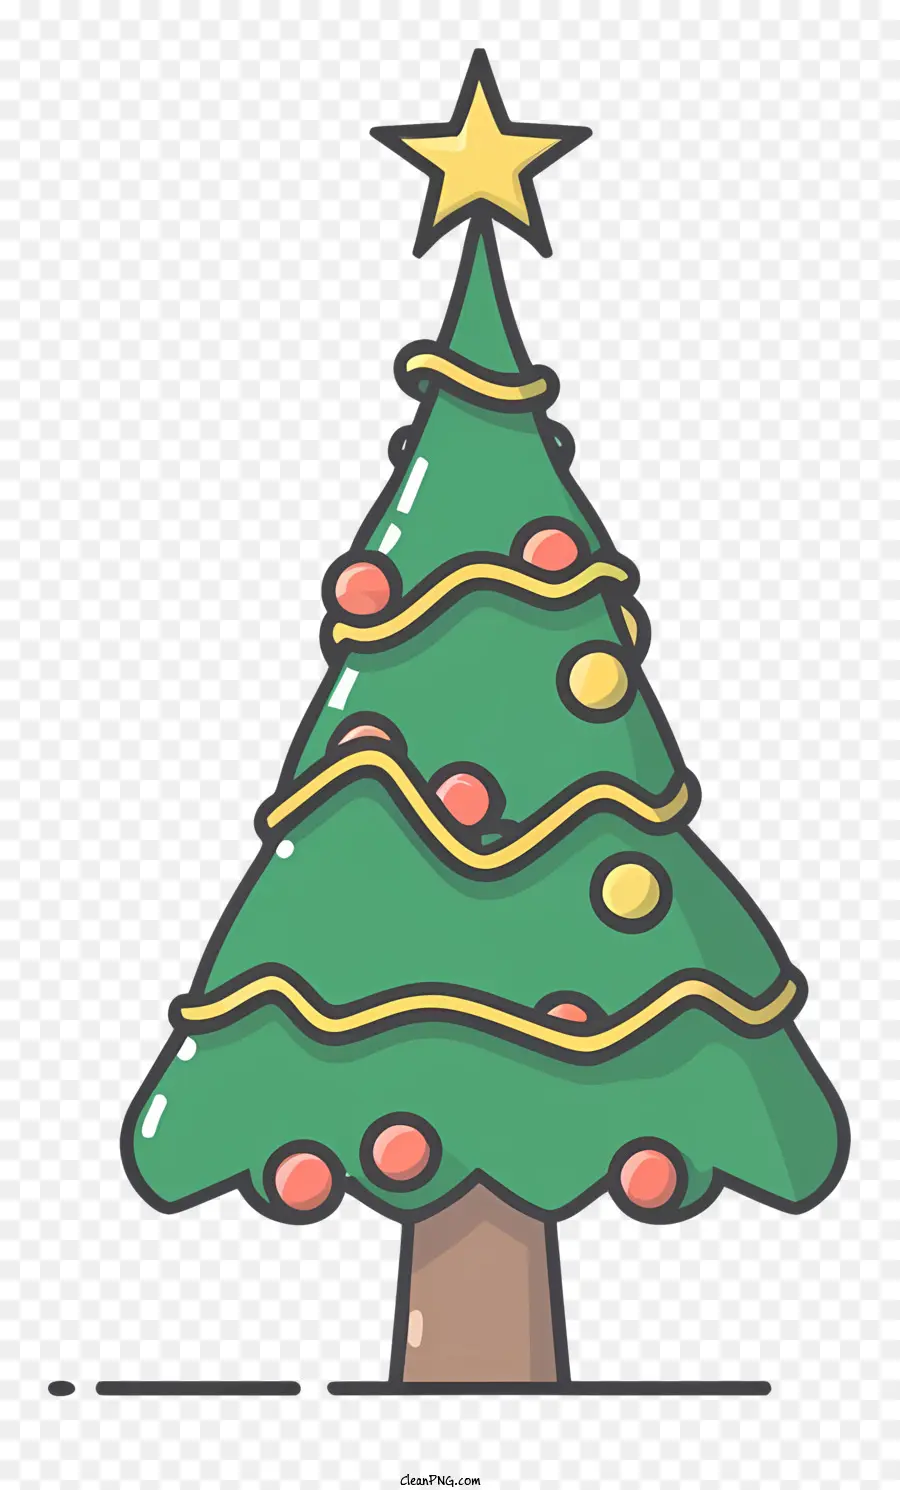 Weihnachtsbaum - Grüner zylindrischer Baum mit goldenen Ornamenten und Stern